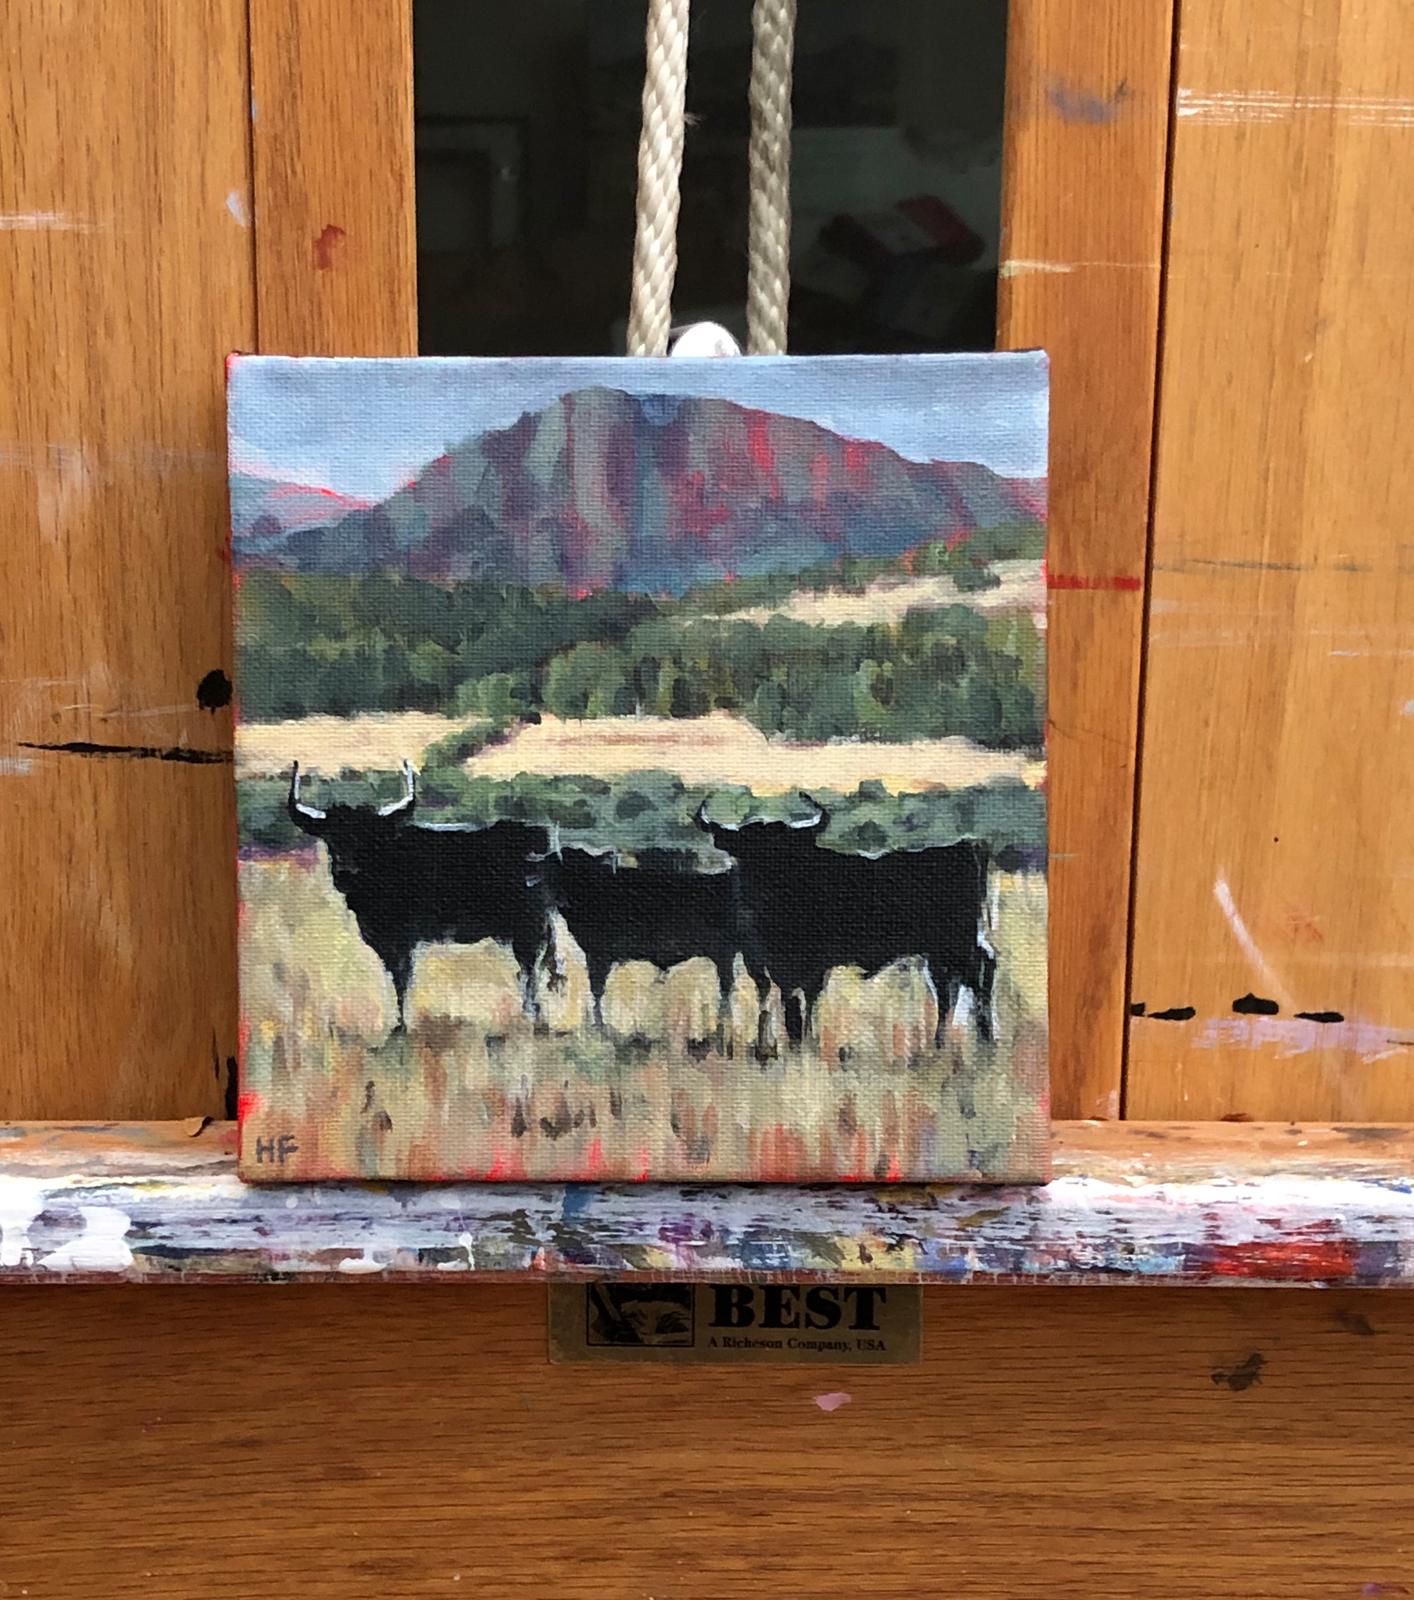 <p>Commentaires de l'artiste<br>L'artiste Heather Foster présente un paysage calme du nord du Nouveau-Mexique. Trois taureaux s'alignent au centre du champ herbeux, devant une vue imprenable sur des montagnes monumentales. Heather commémore et